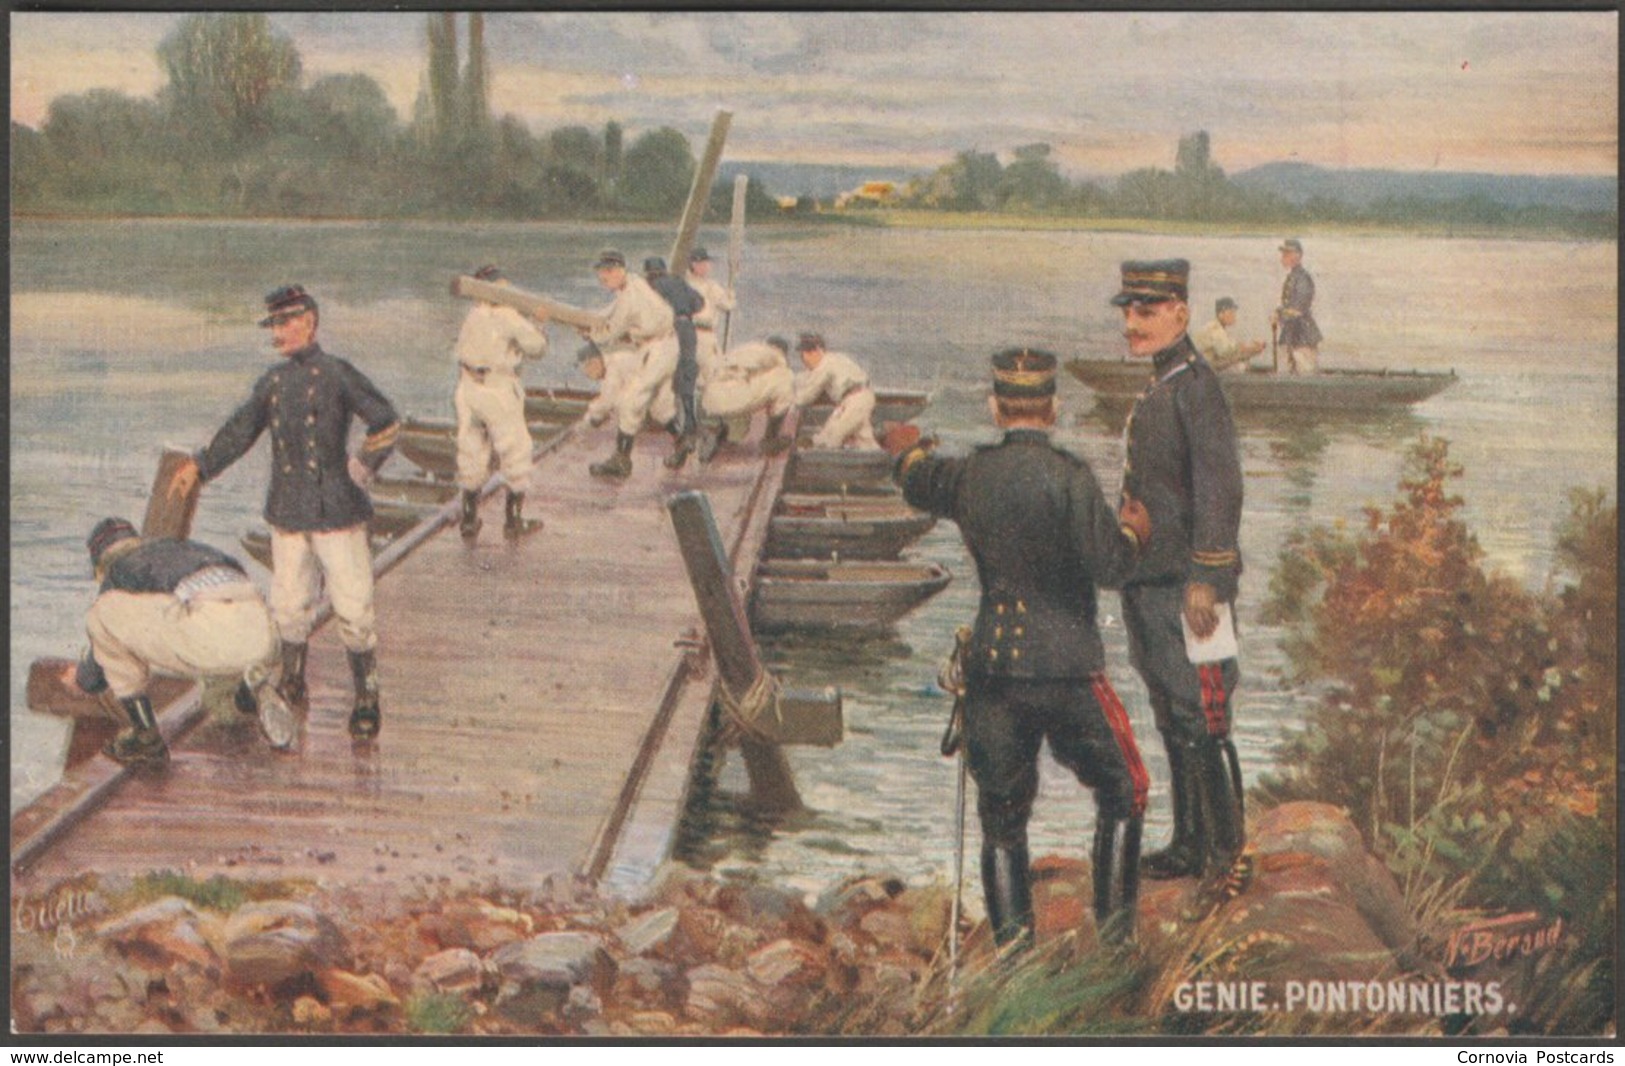 N Beraud - Genie, Pontonniers, 1917 - Tuck's Oilette Postcard - Beraud